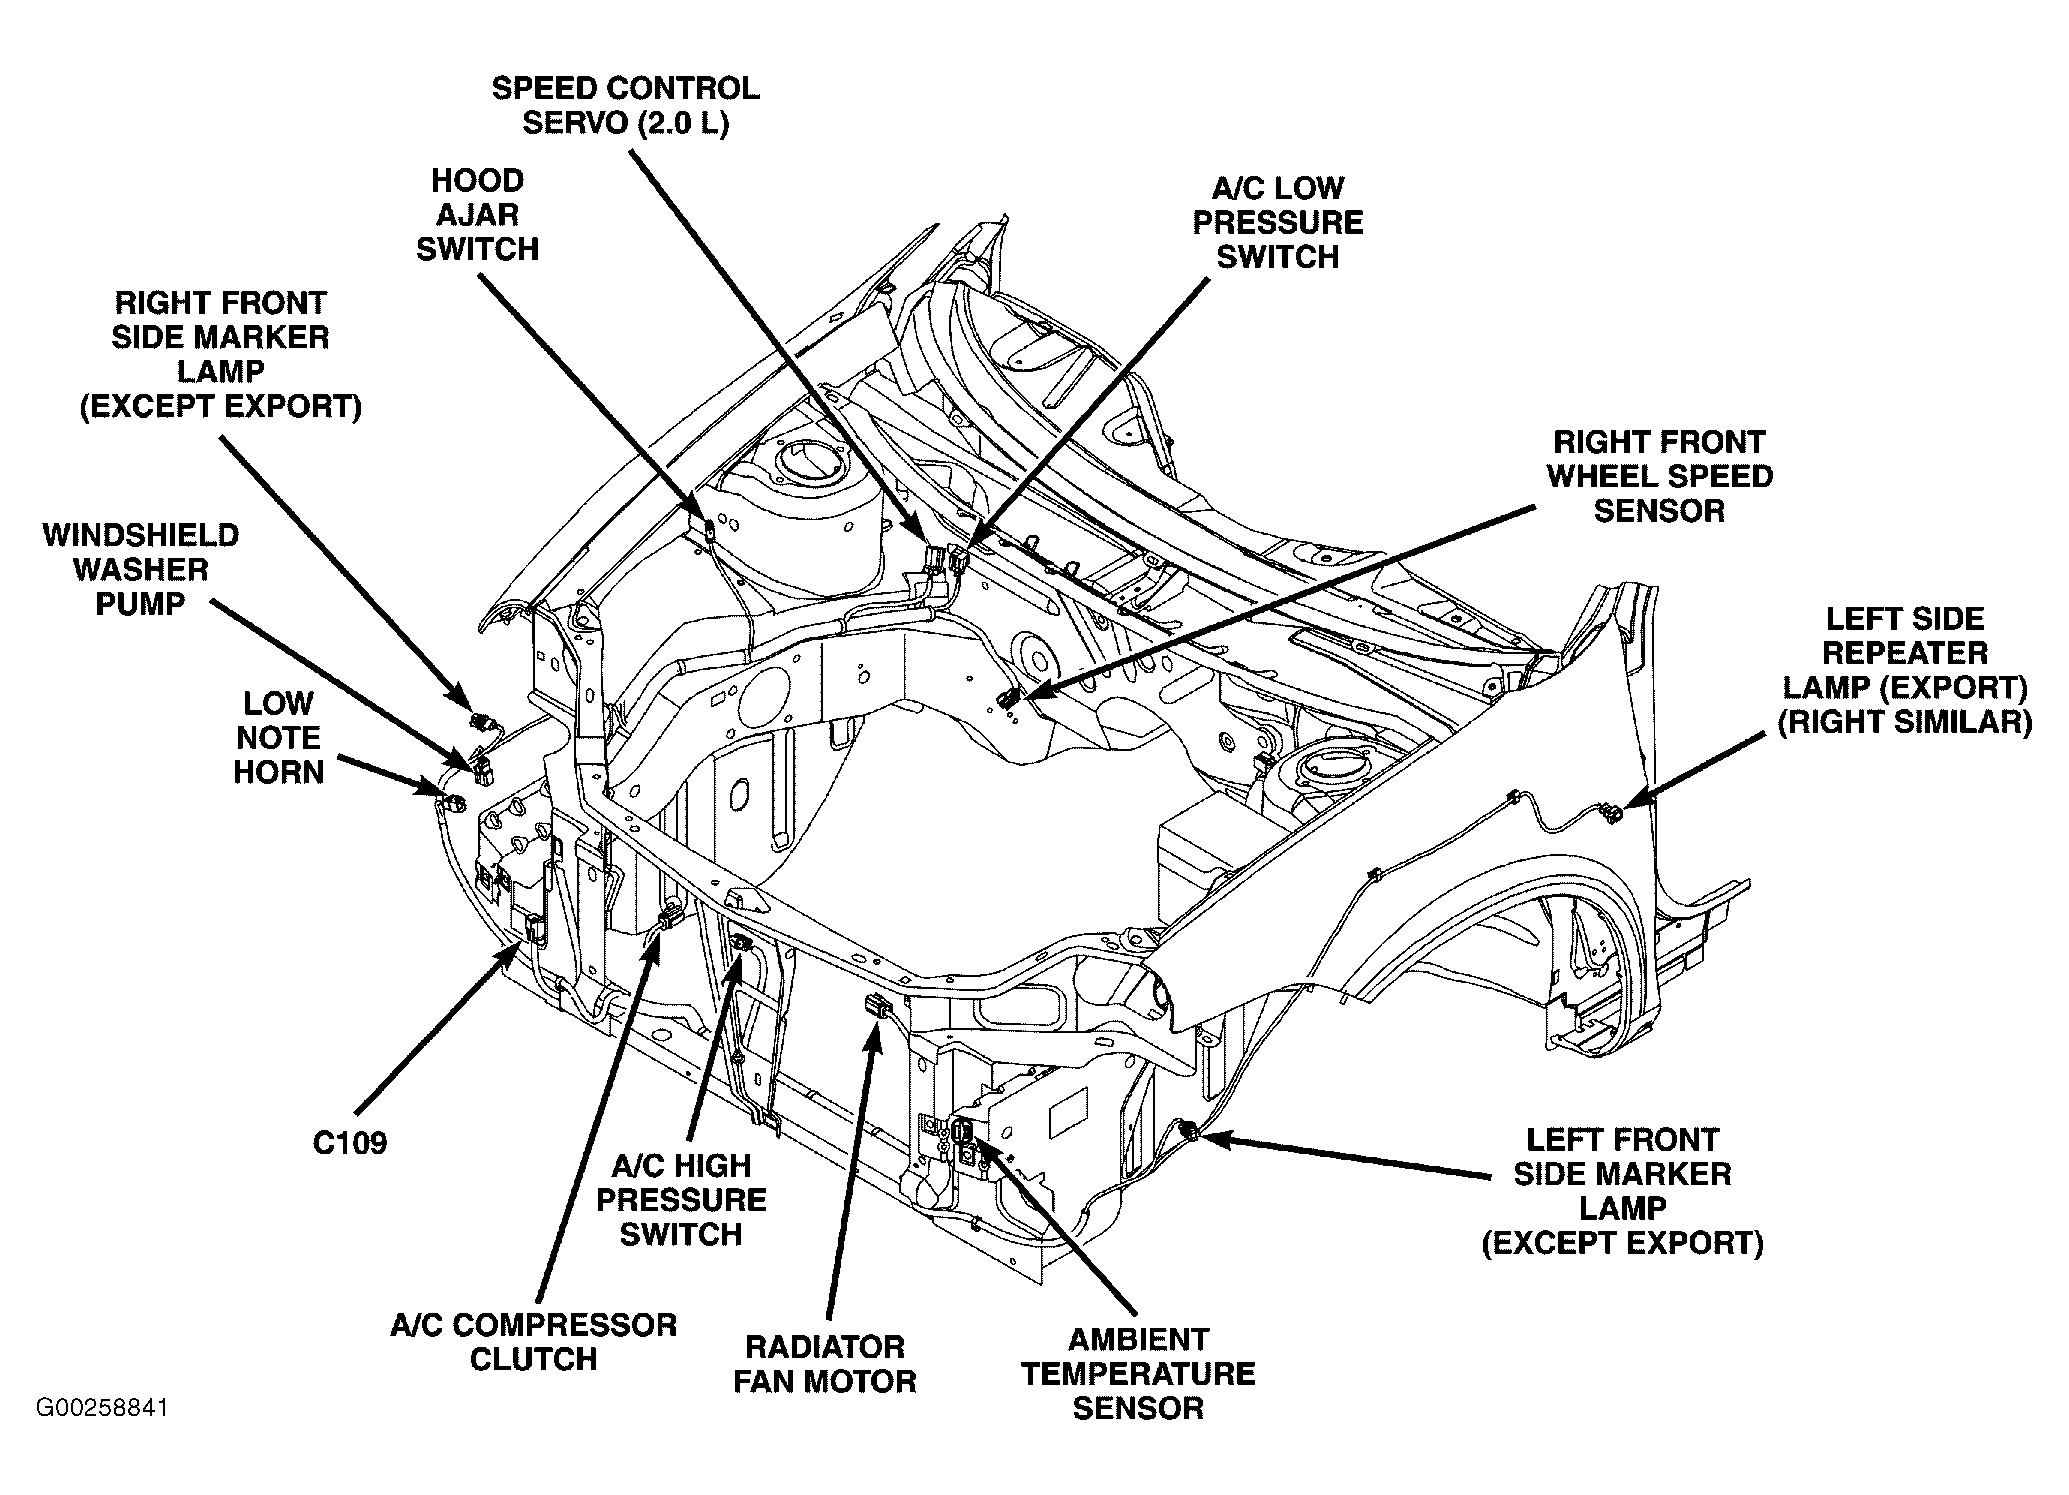 Dodge SX SRT-4 2004 - Component Locations -  Engine Compartment